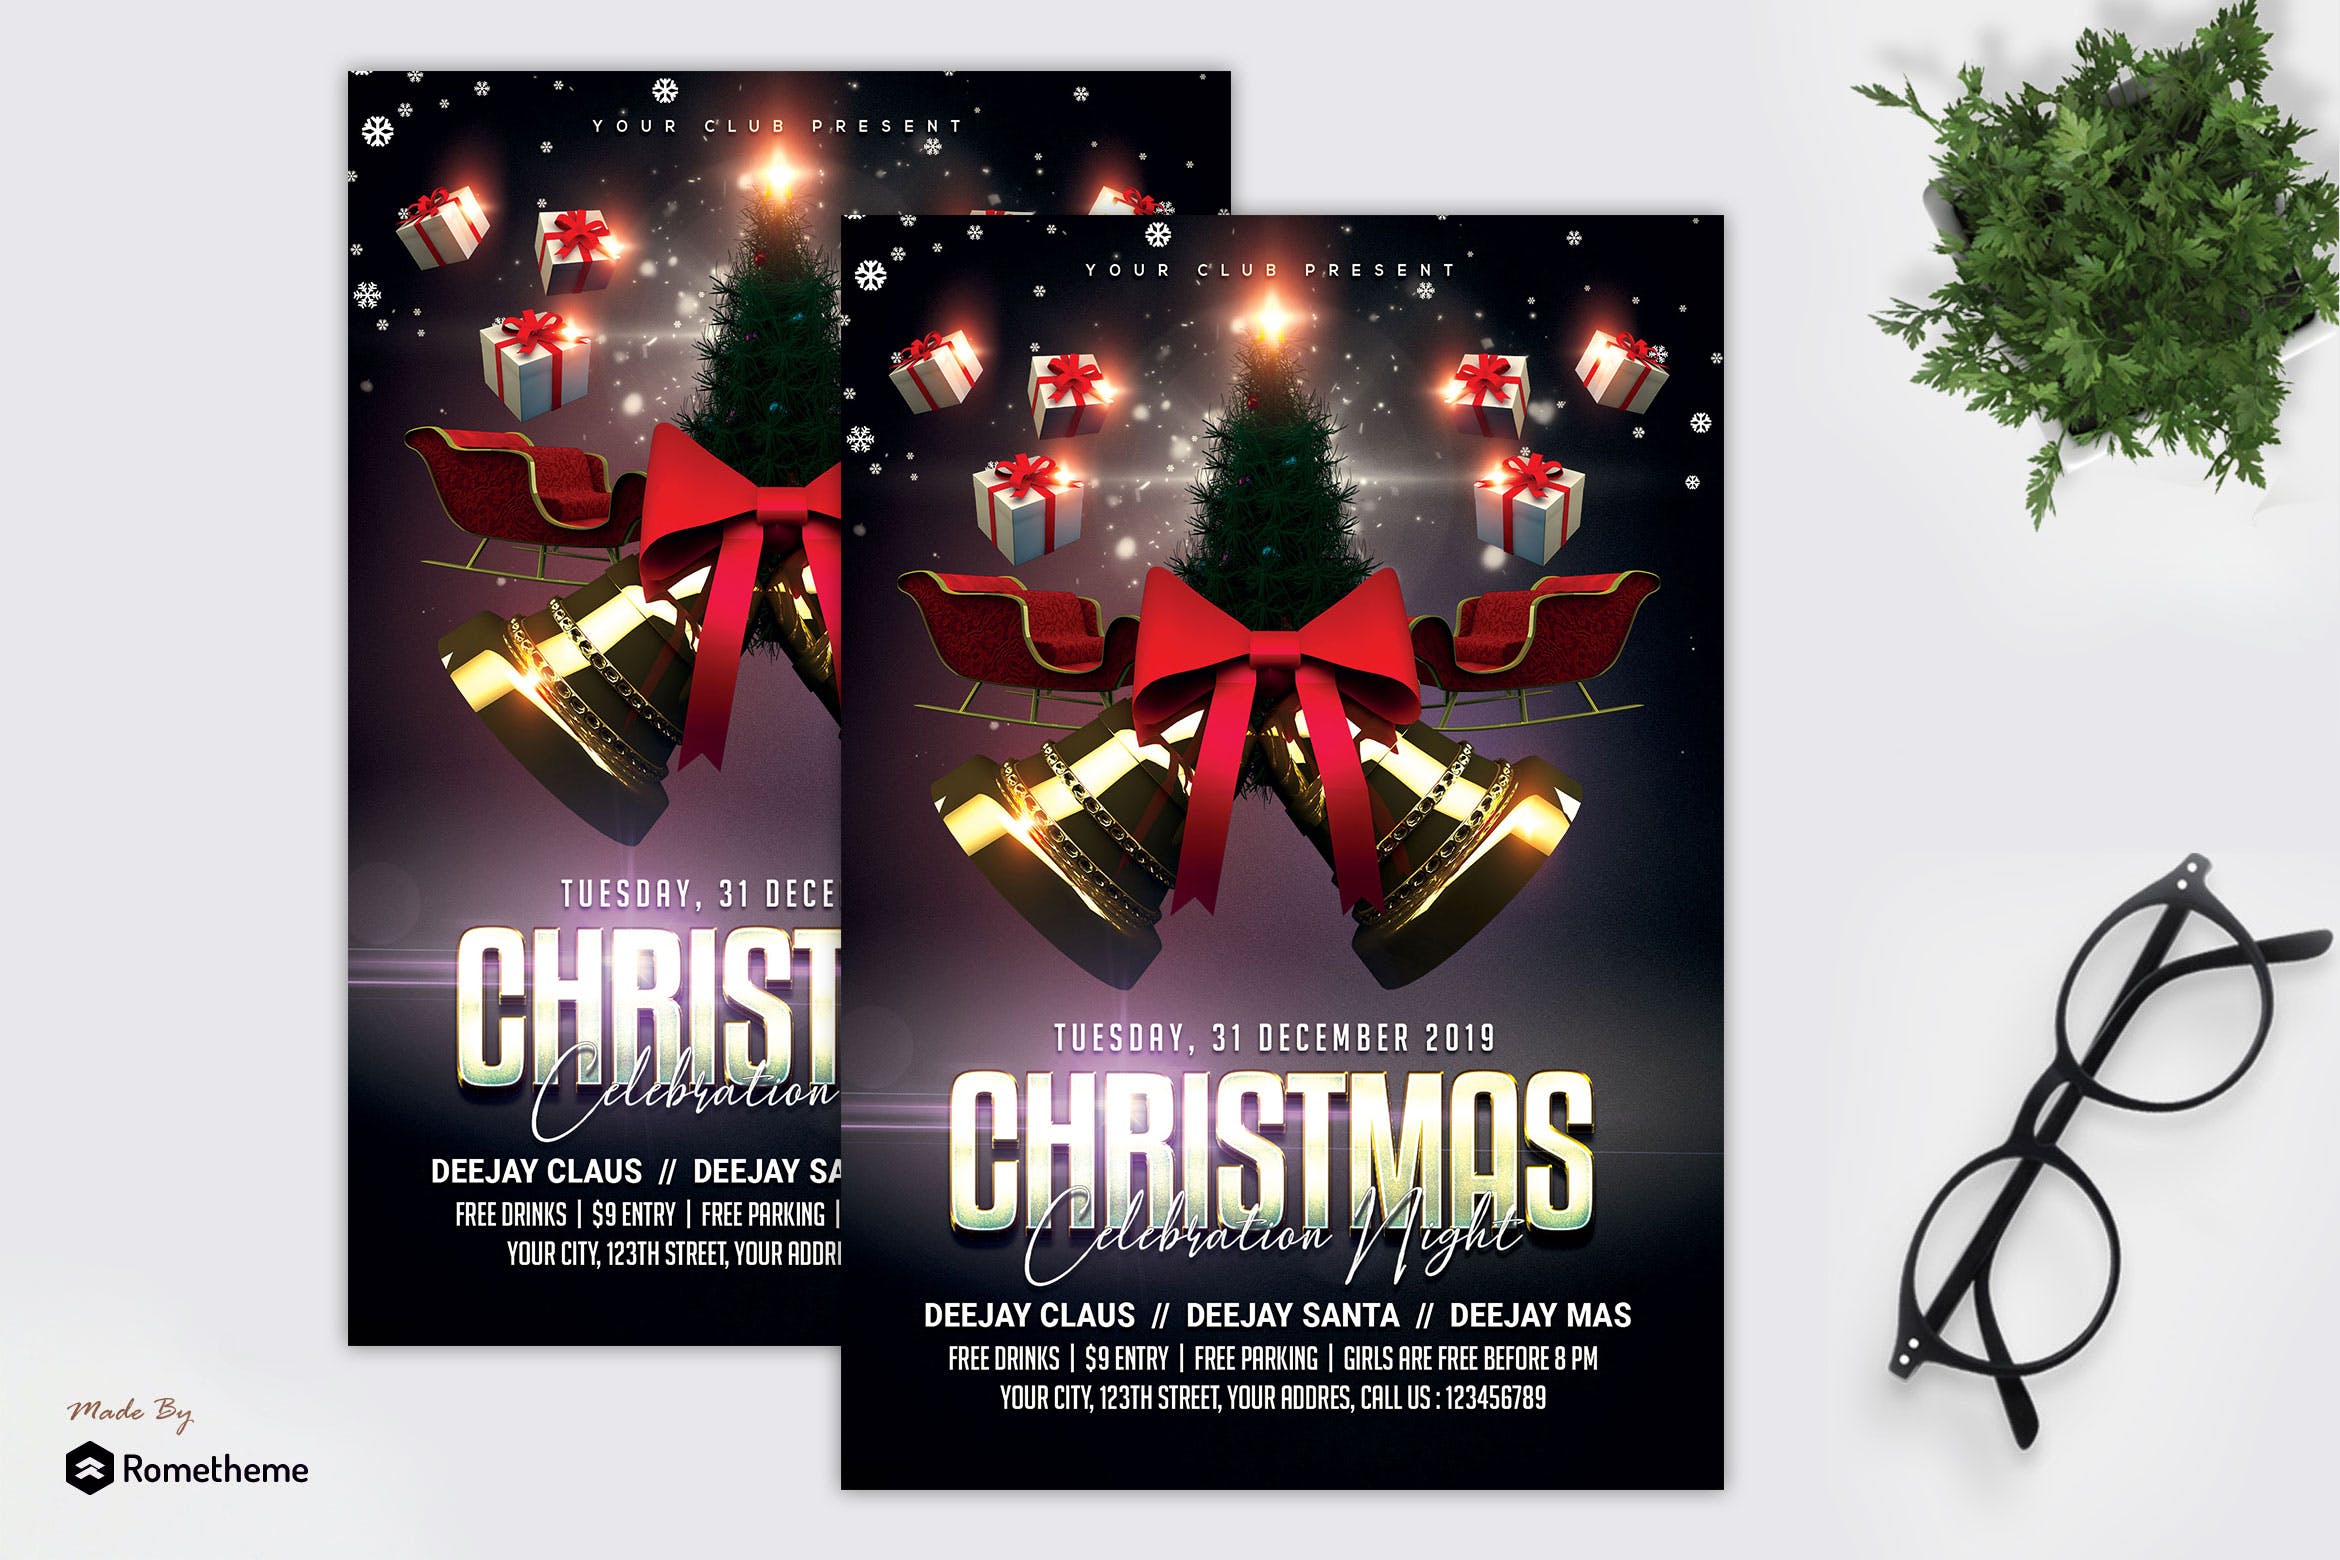 圣诞节庆祝之夜海报传单素材库精选PSD模板 Christmas Celebration Night Flyer MR插图